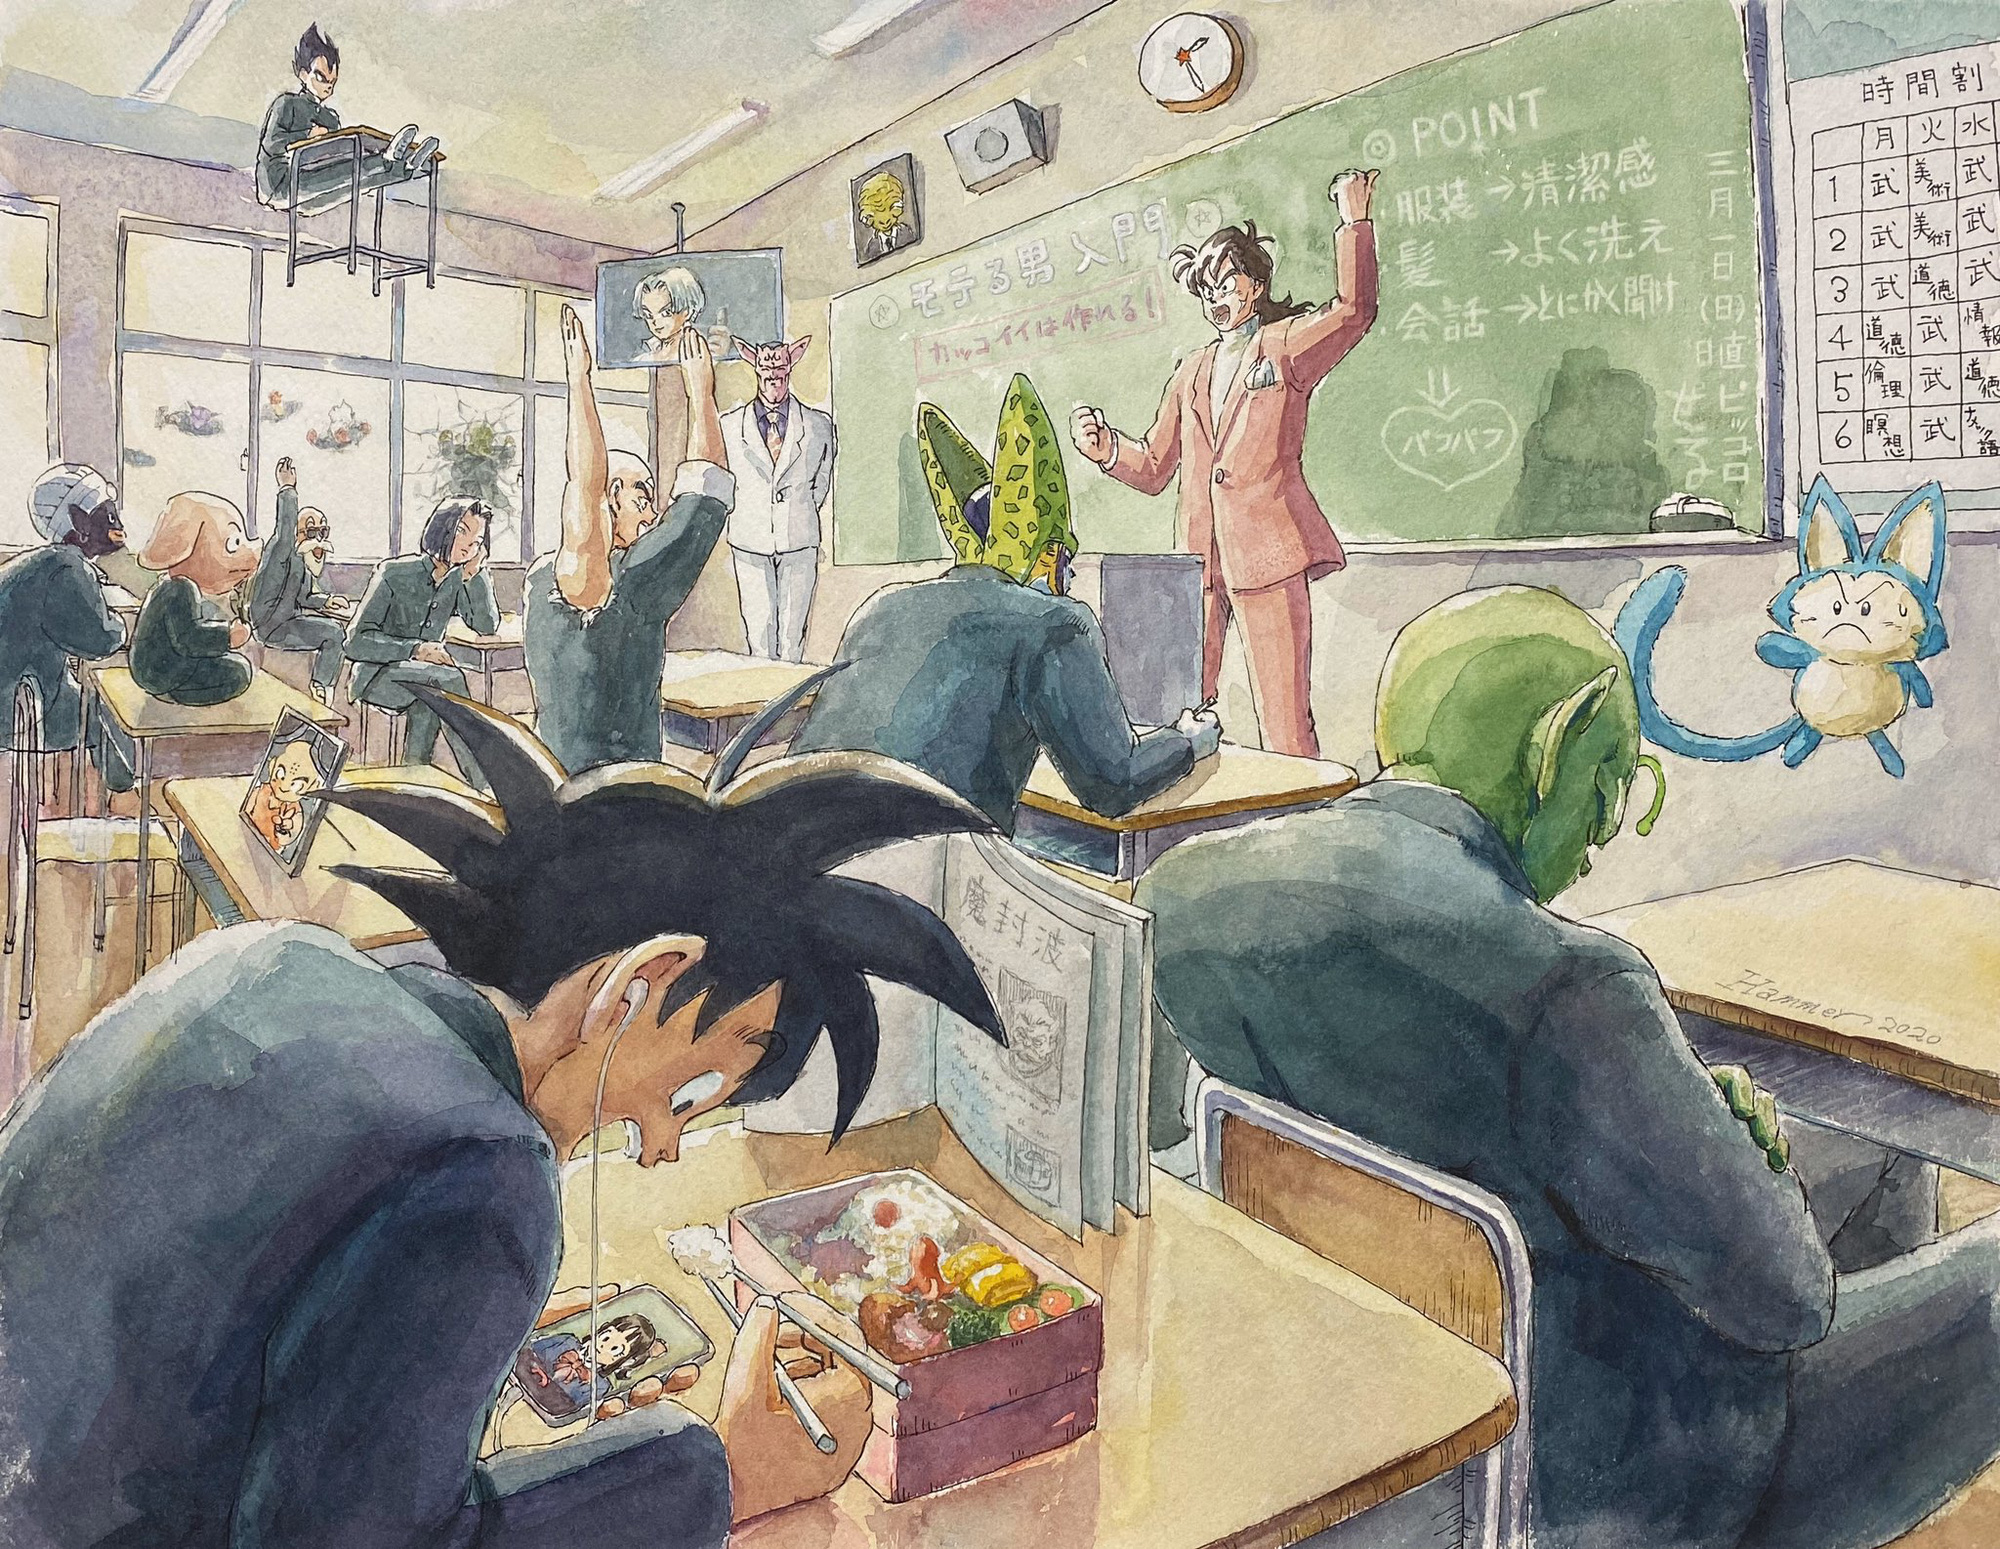 Chết cười loạt tranh vẽ fan art các nhân vật phản diện Dragon Ball trở thành... nữ sinh trung học - Ảnh 7.